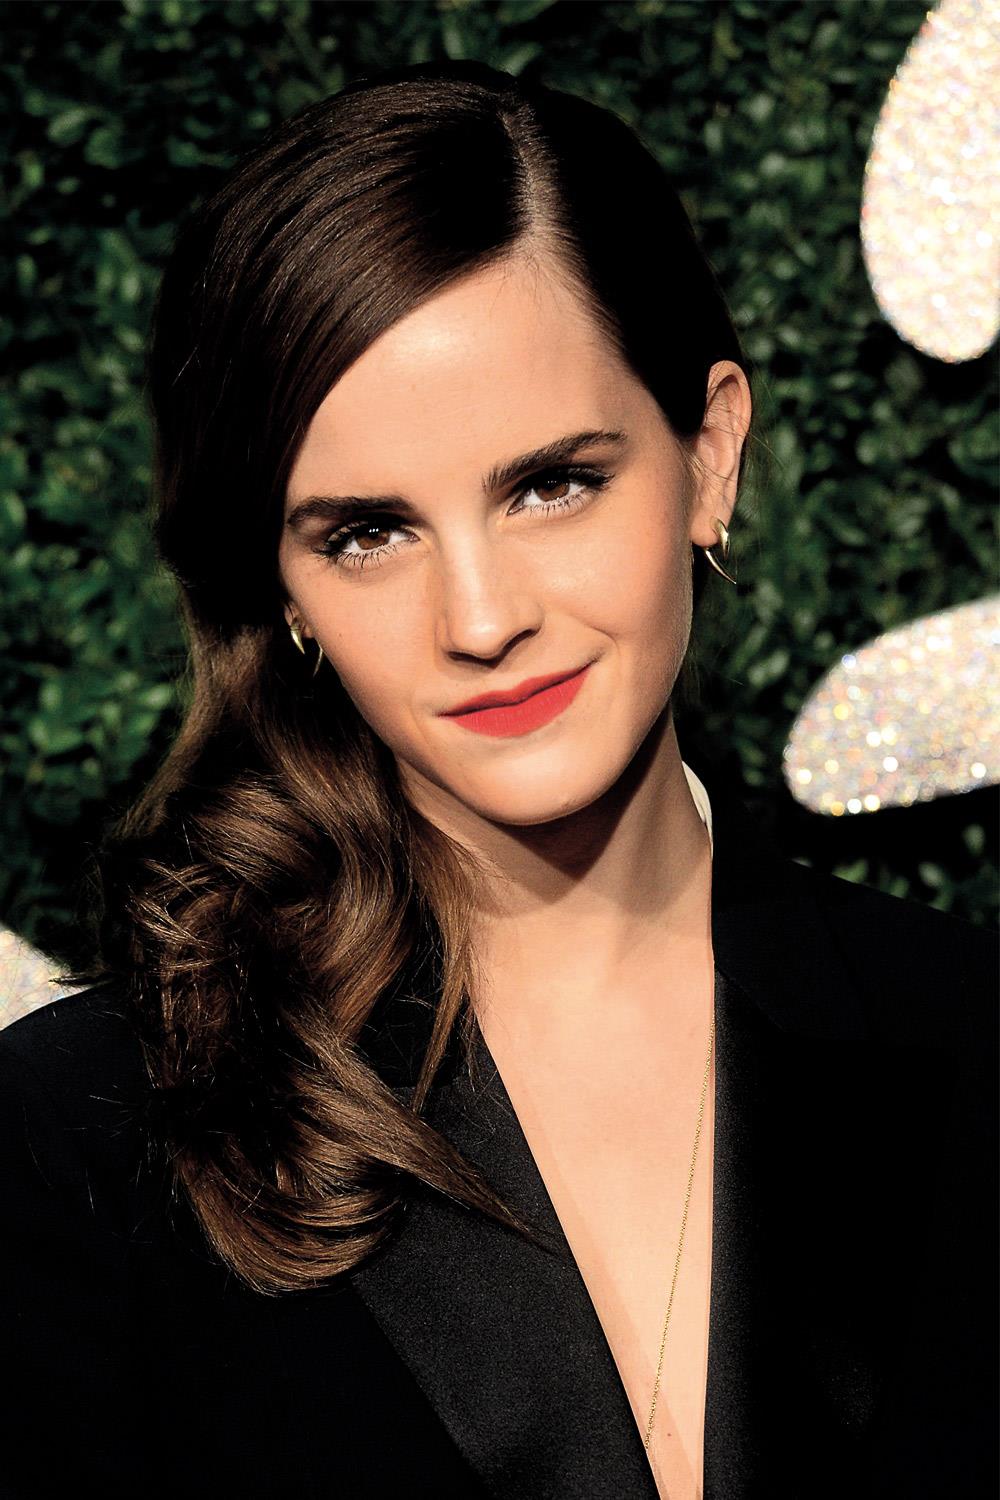 Cortes y peinados forma cara Emma Watson